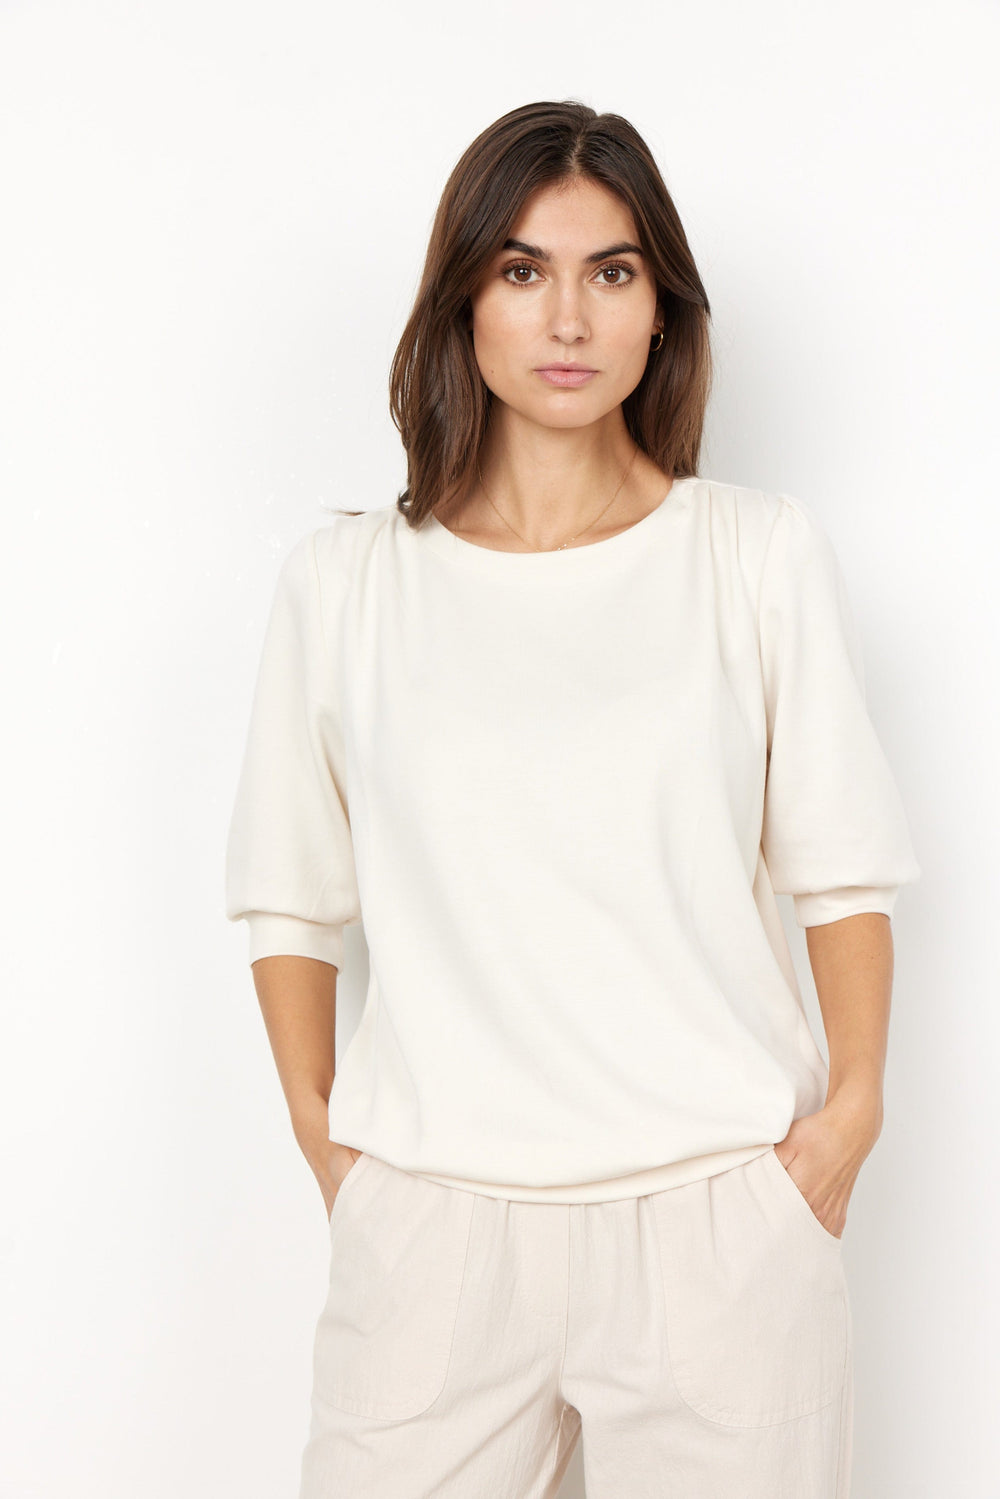 Sc-Banu 133 cream | Skjorter og bluser | Smuk - Dameklær på nett